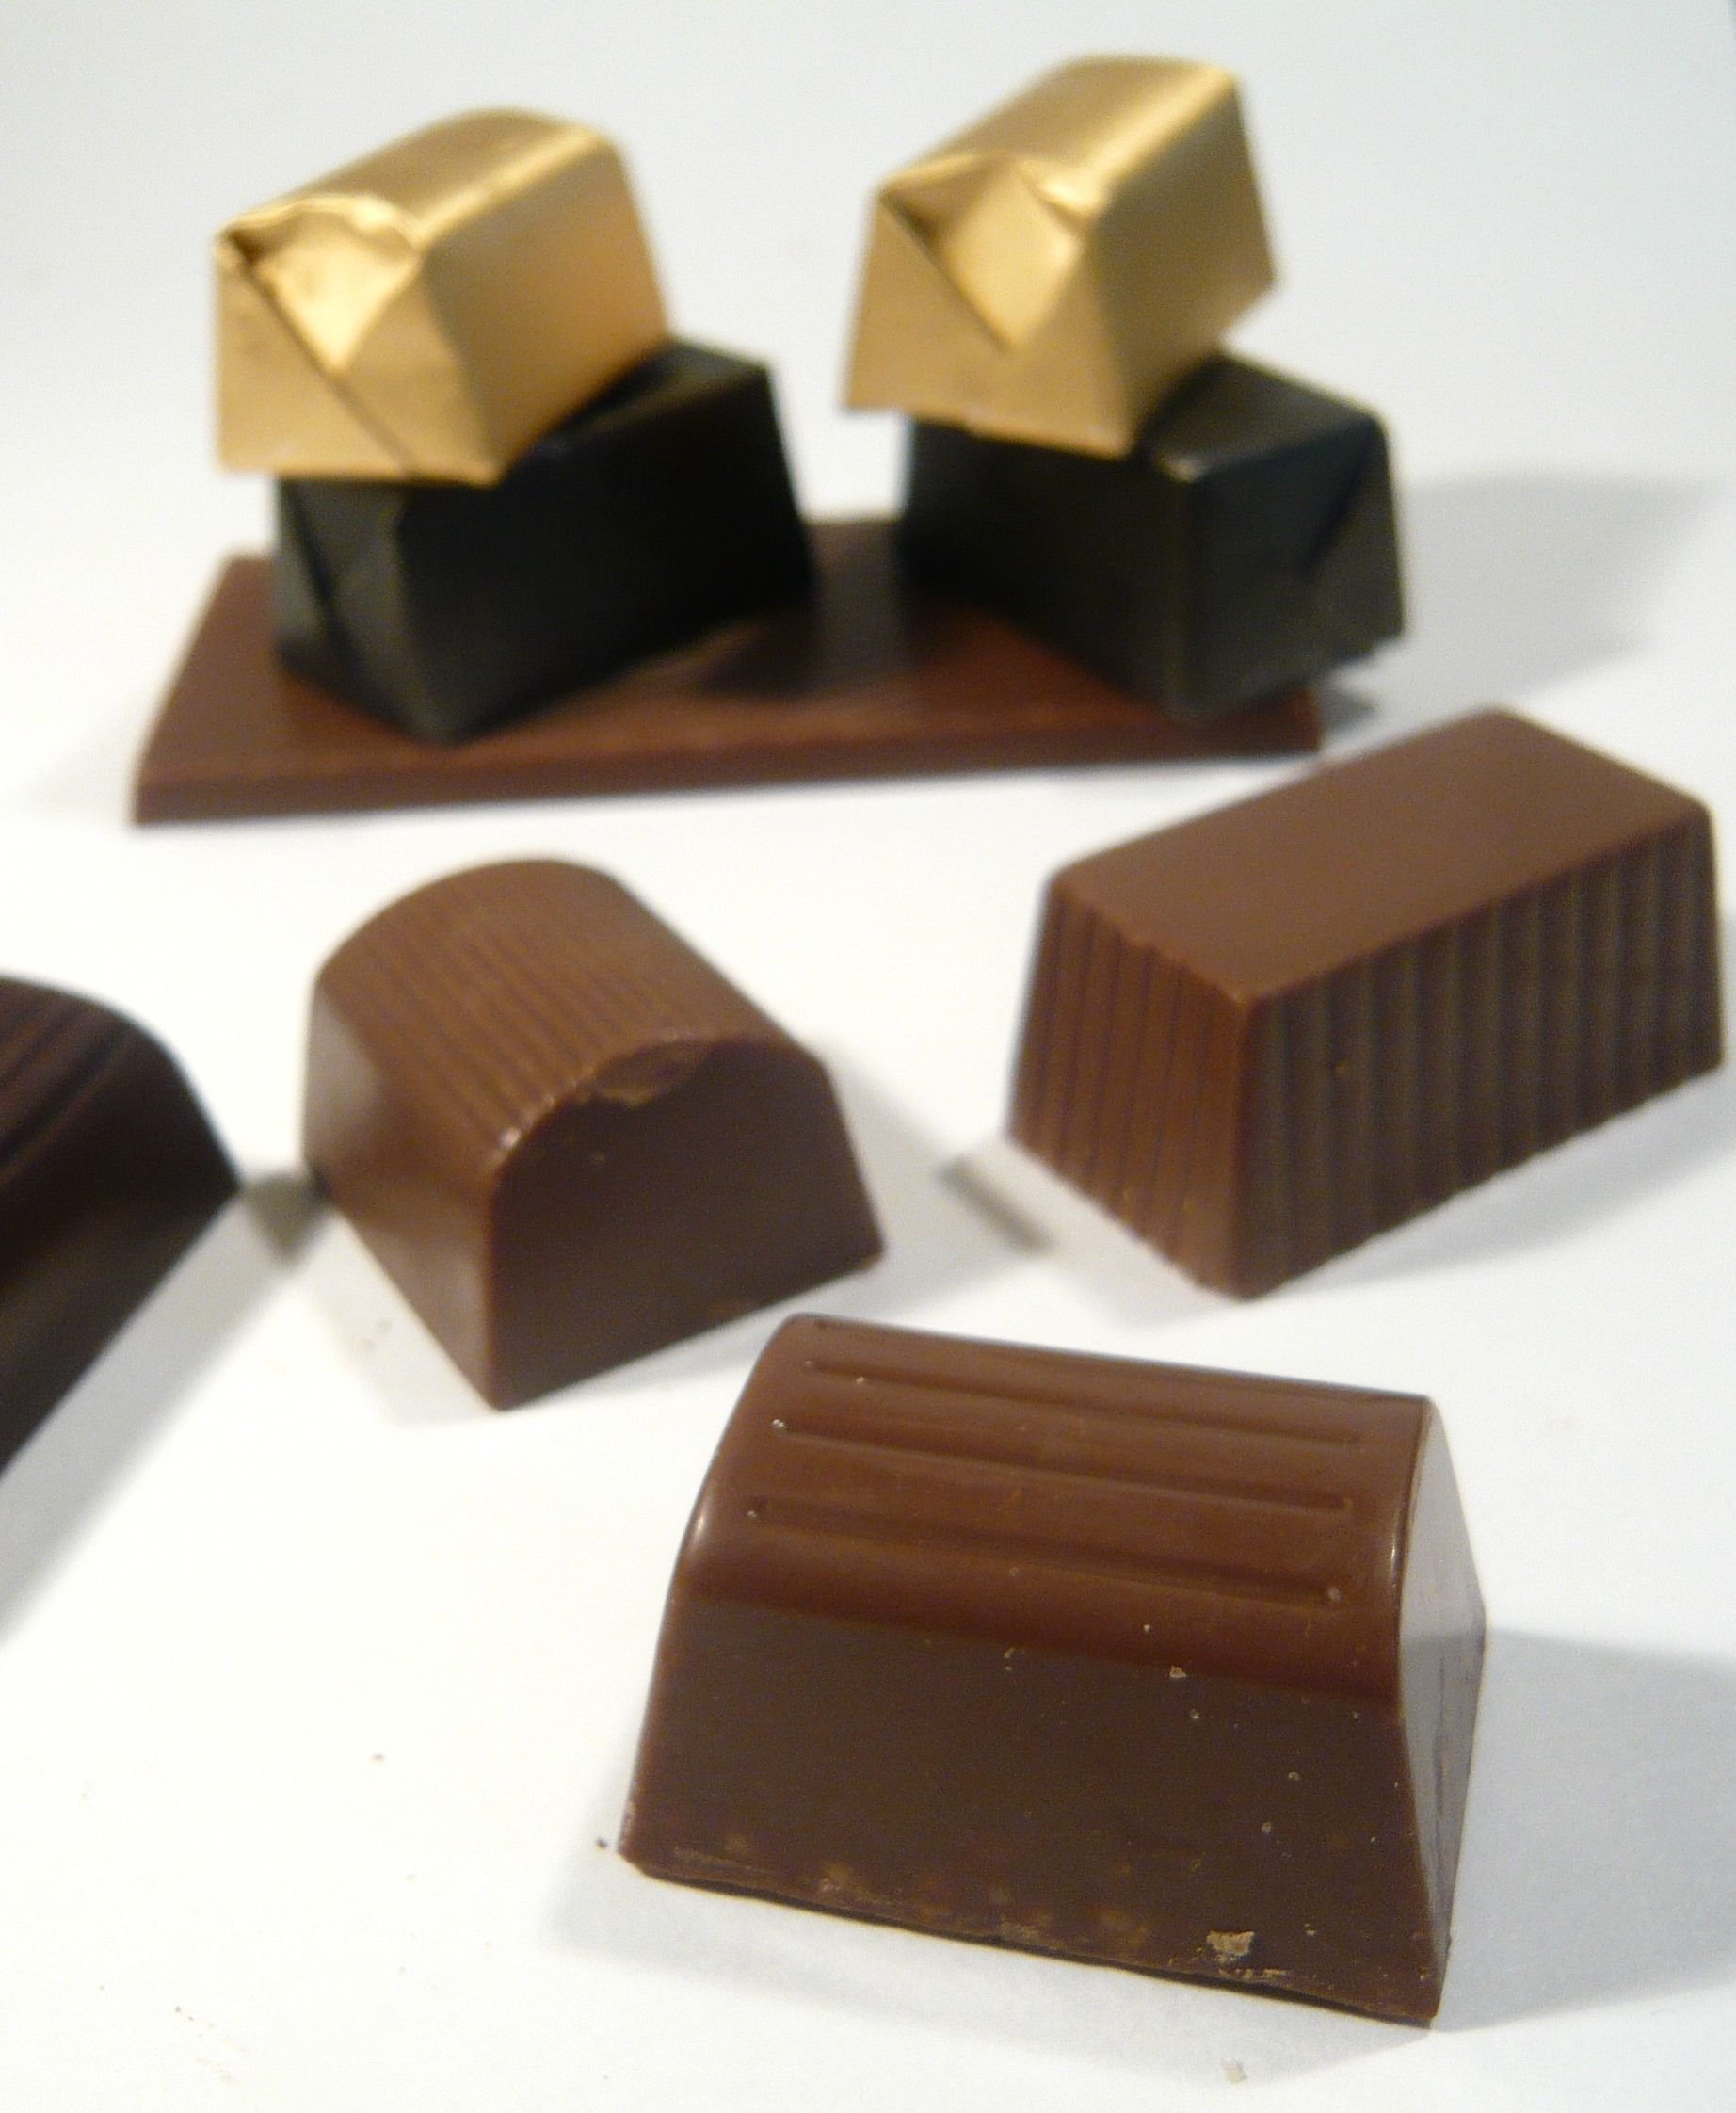 Выбрать конфеты шоколадные. Mercedes choc шоколадные конфеты. Шоколадная конфета одна. Patchi шоколад. Конфеты без шоколада.